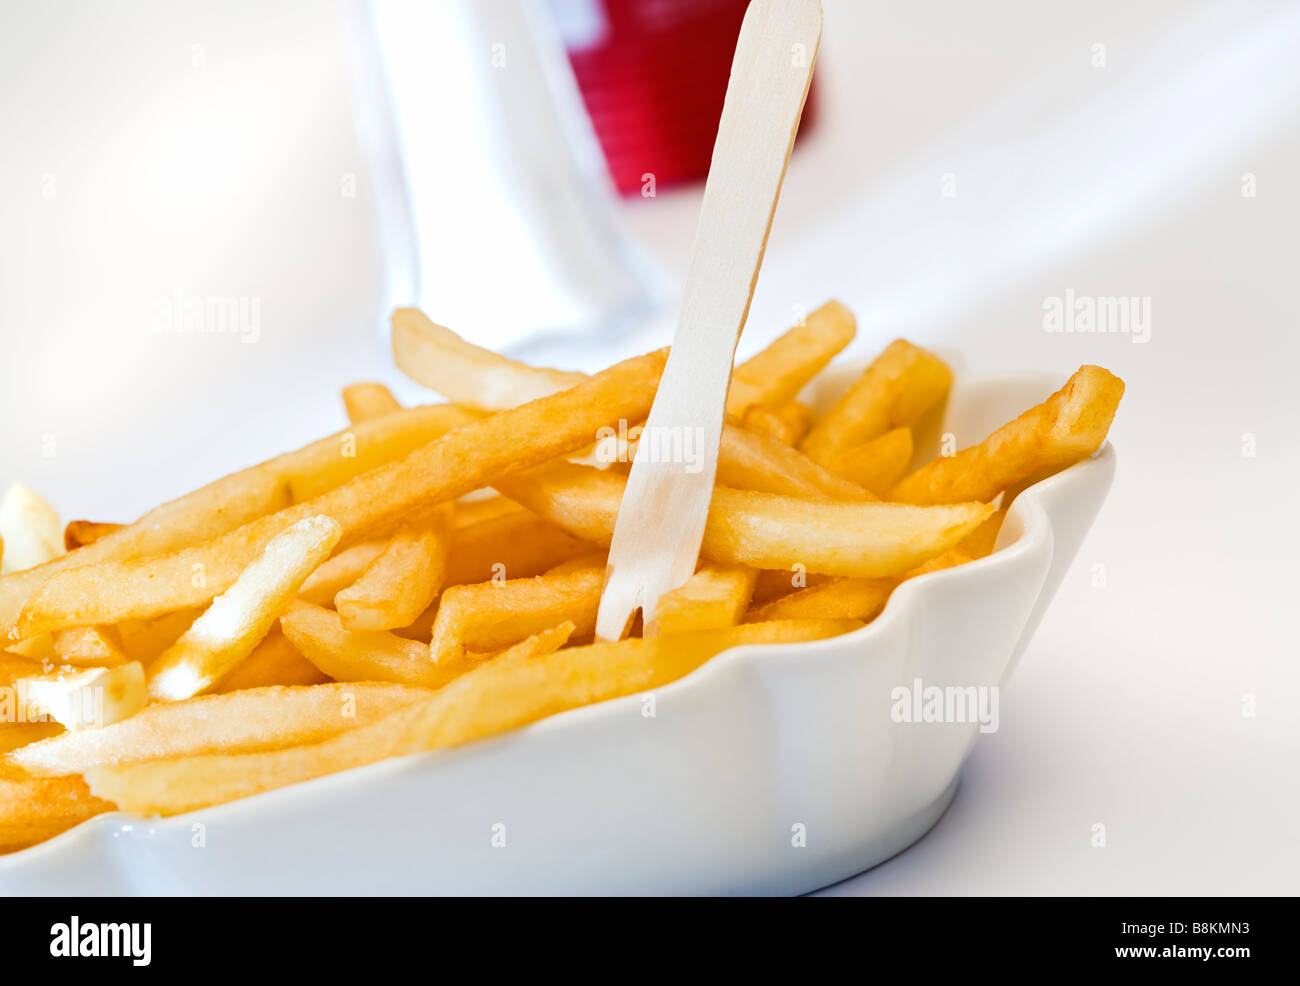 Pommes frites in Keramikschale mit hölzernen Pick, Salzstreuer und Ketchup- Flasche im Hintergrund, schräge Ansicht Stockfotografie - Alamy